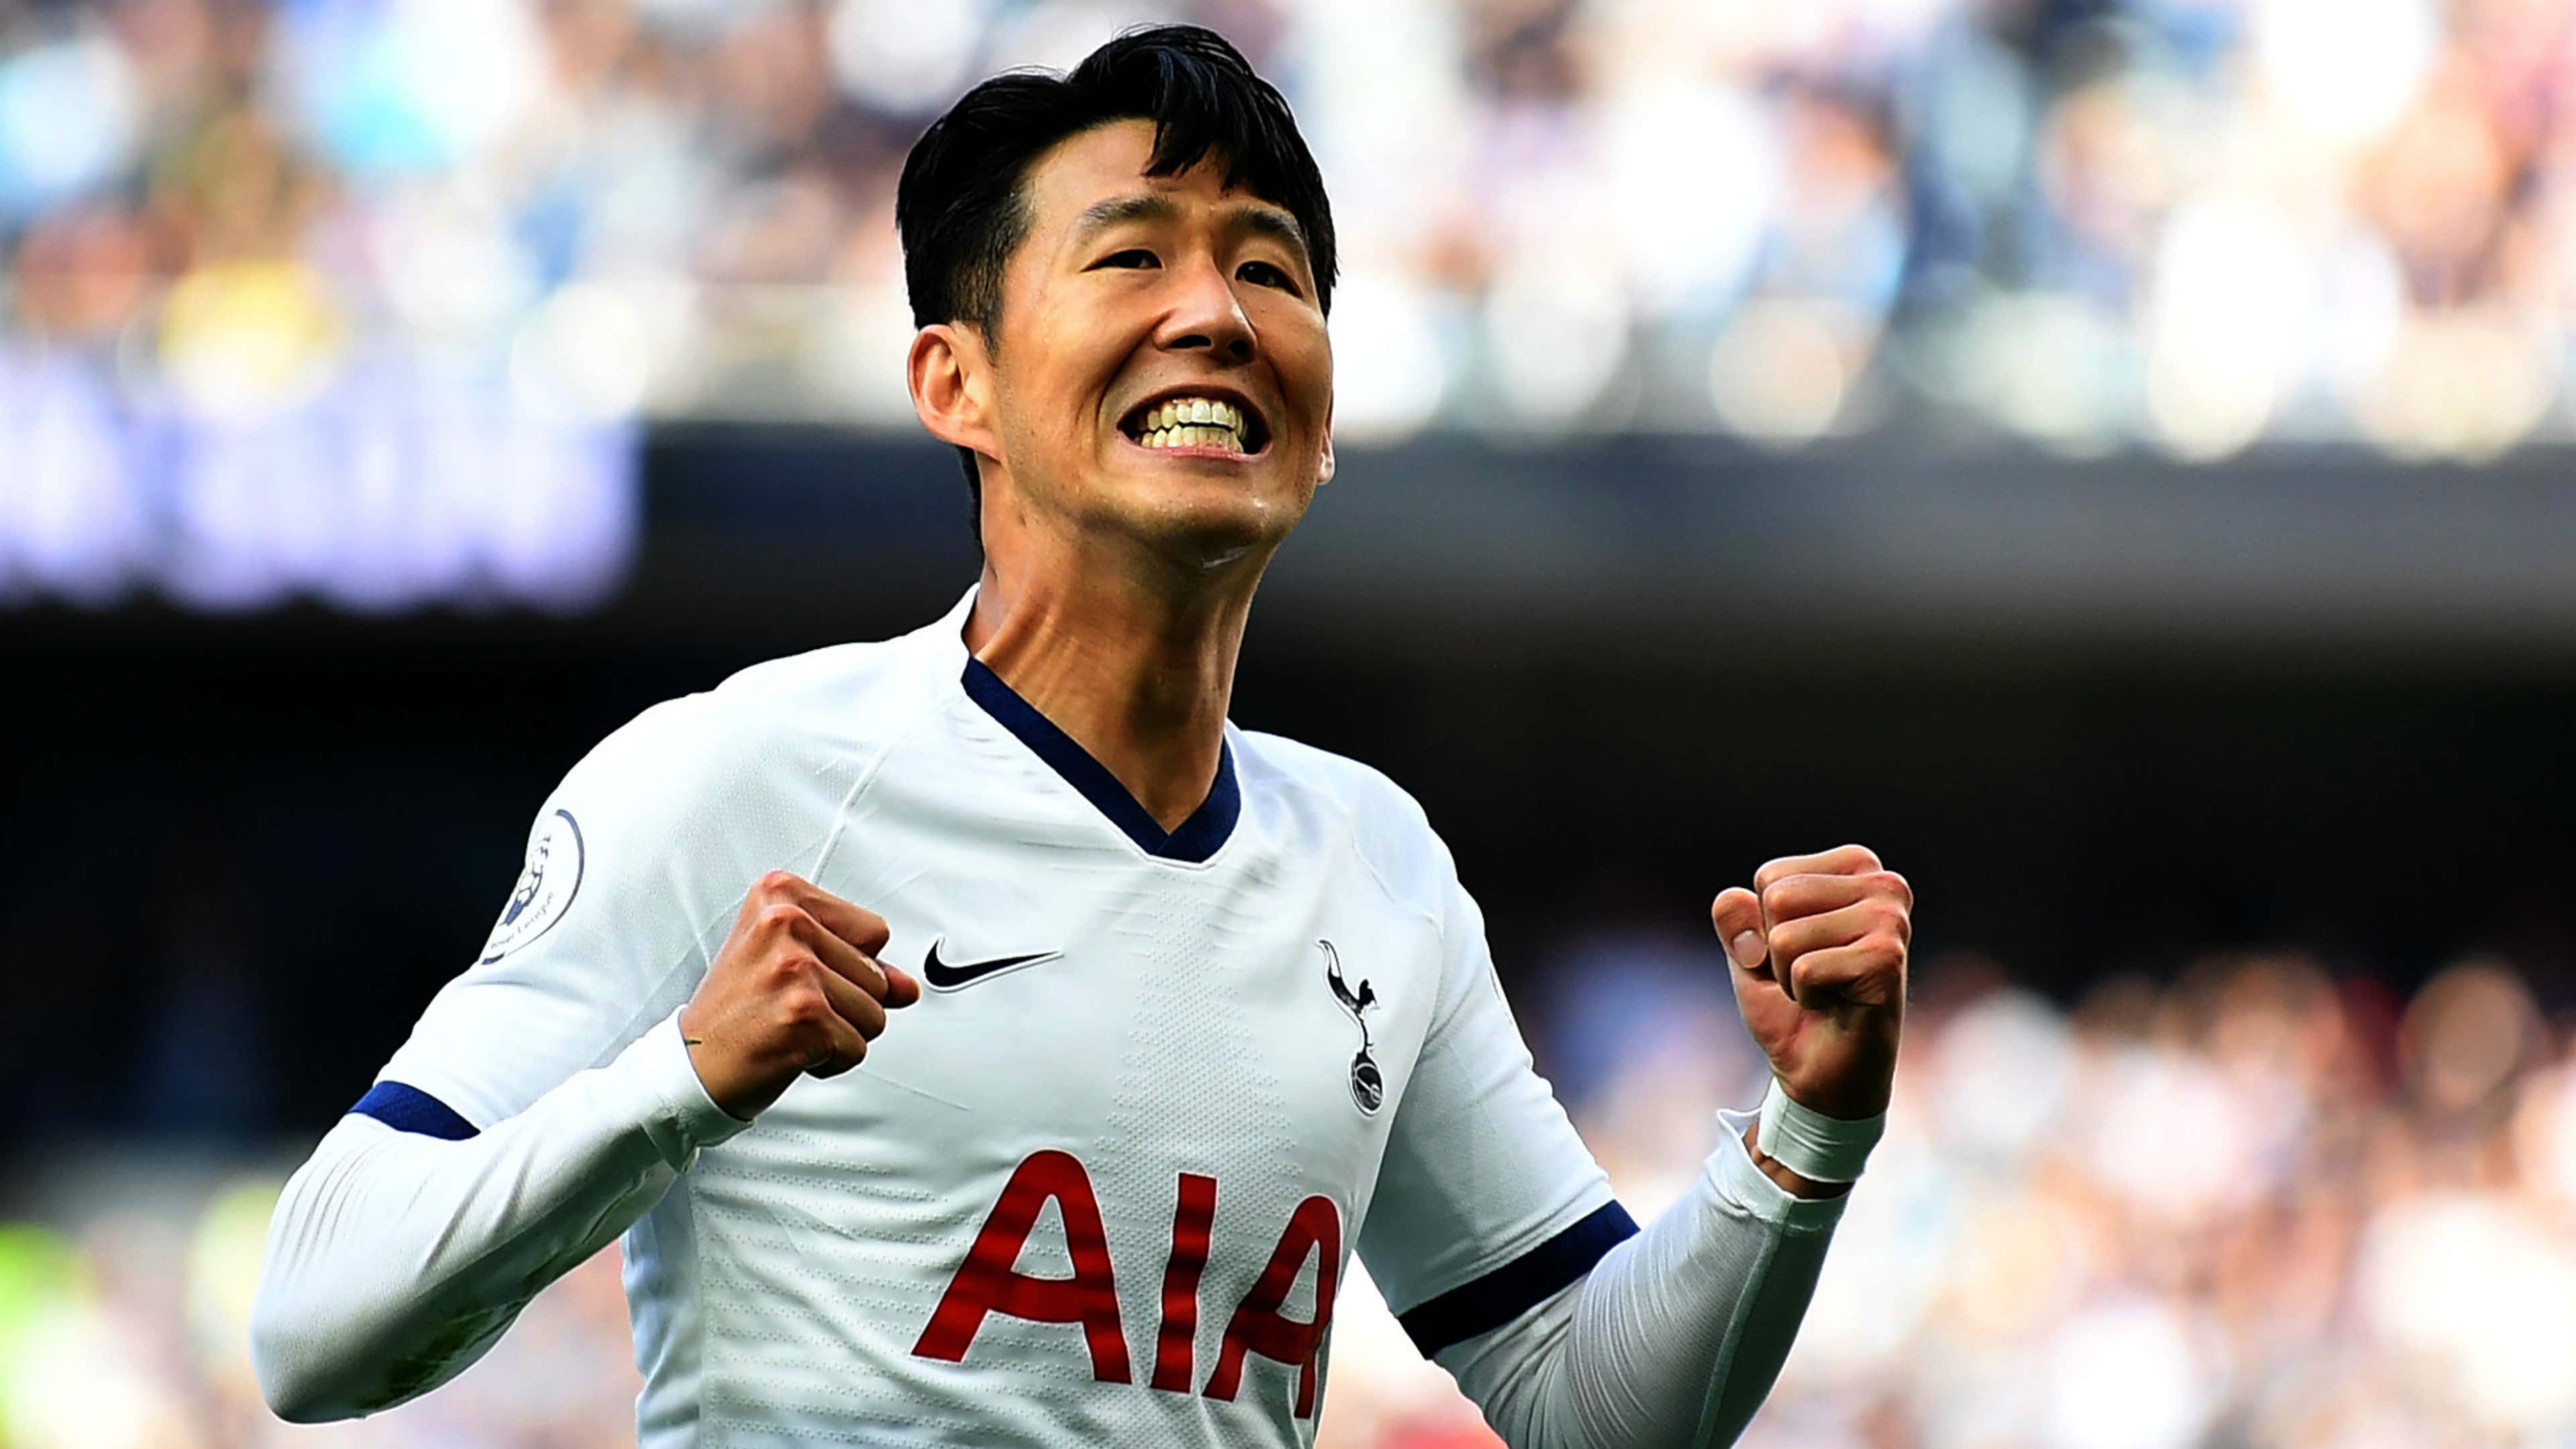 20/21 Tottenham Hotspur Son Heung-min Signed Jersey Nike Spurs